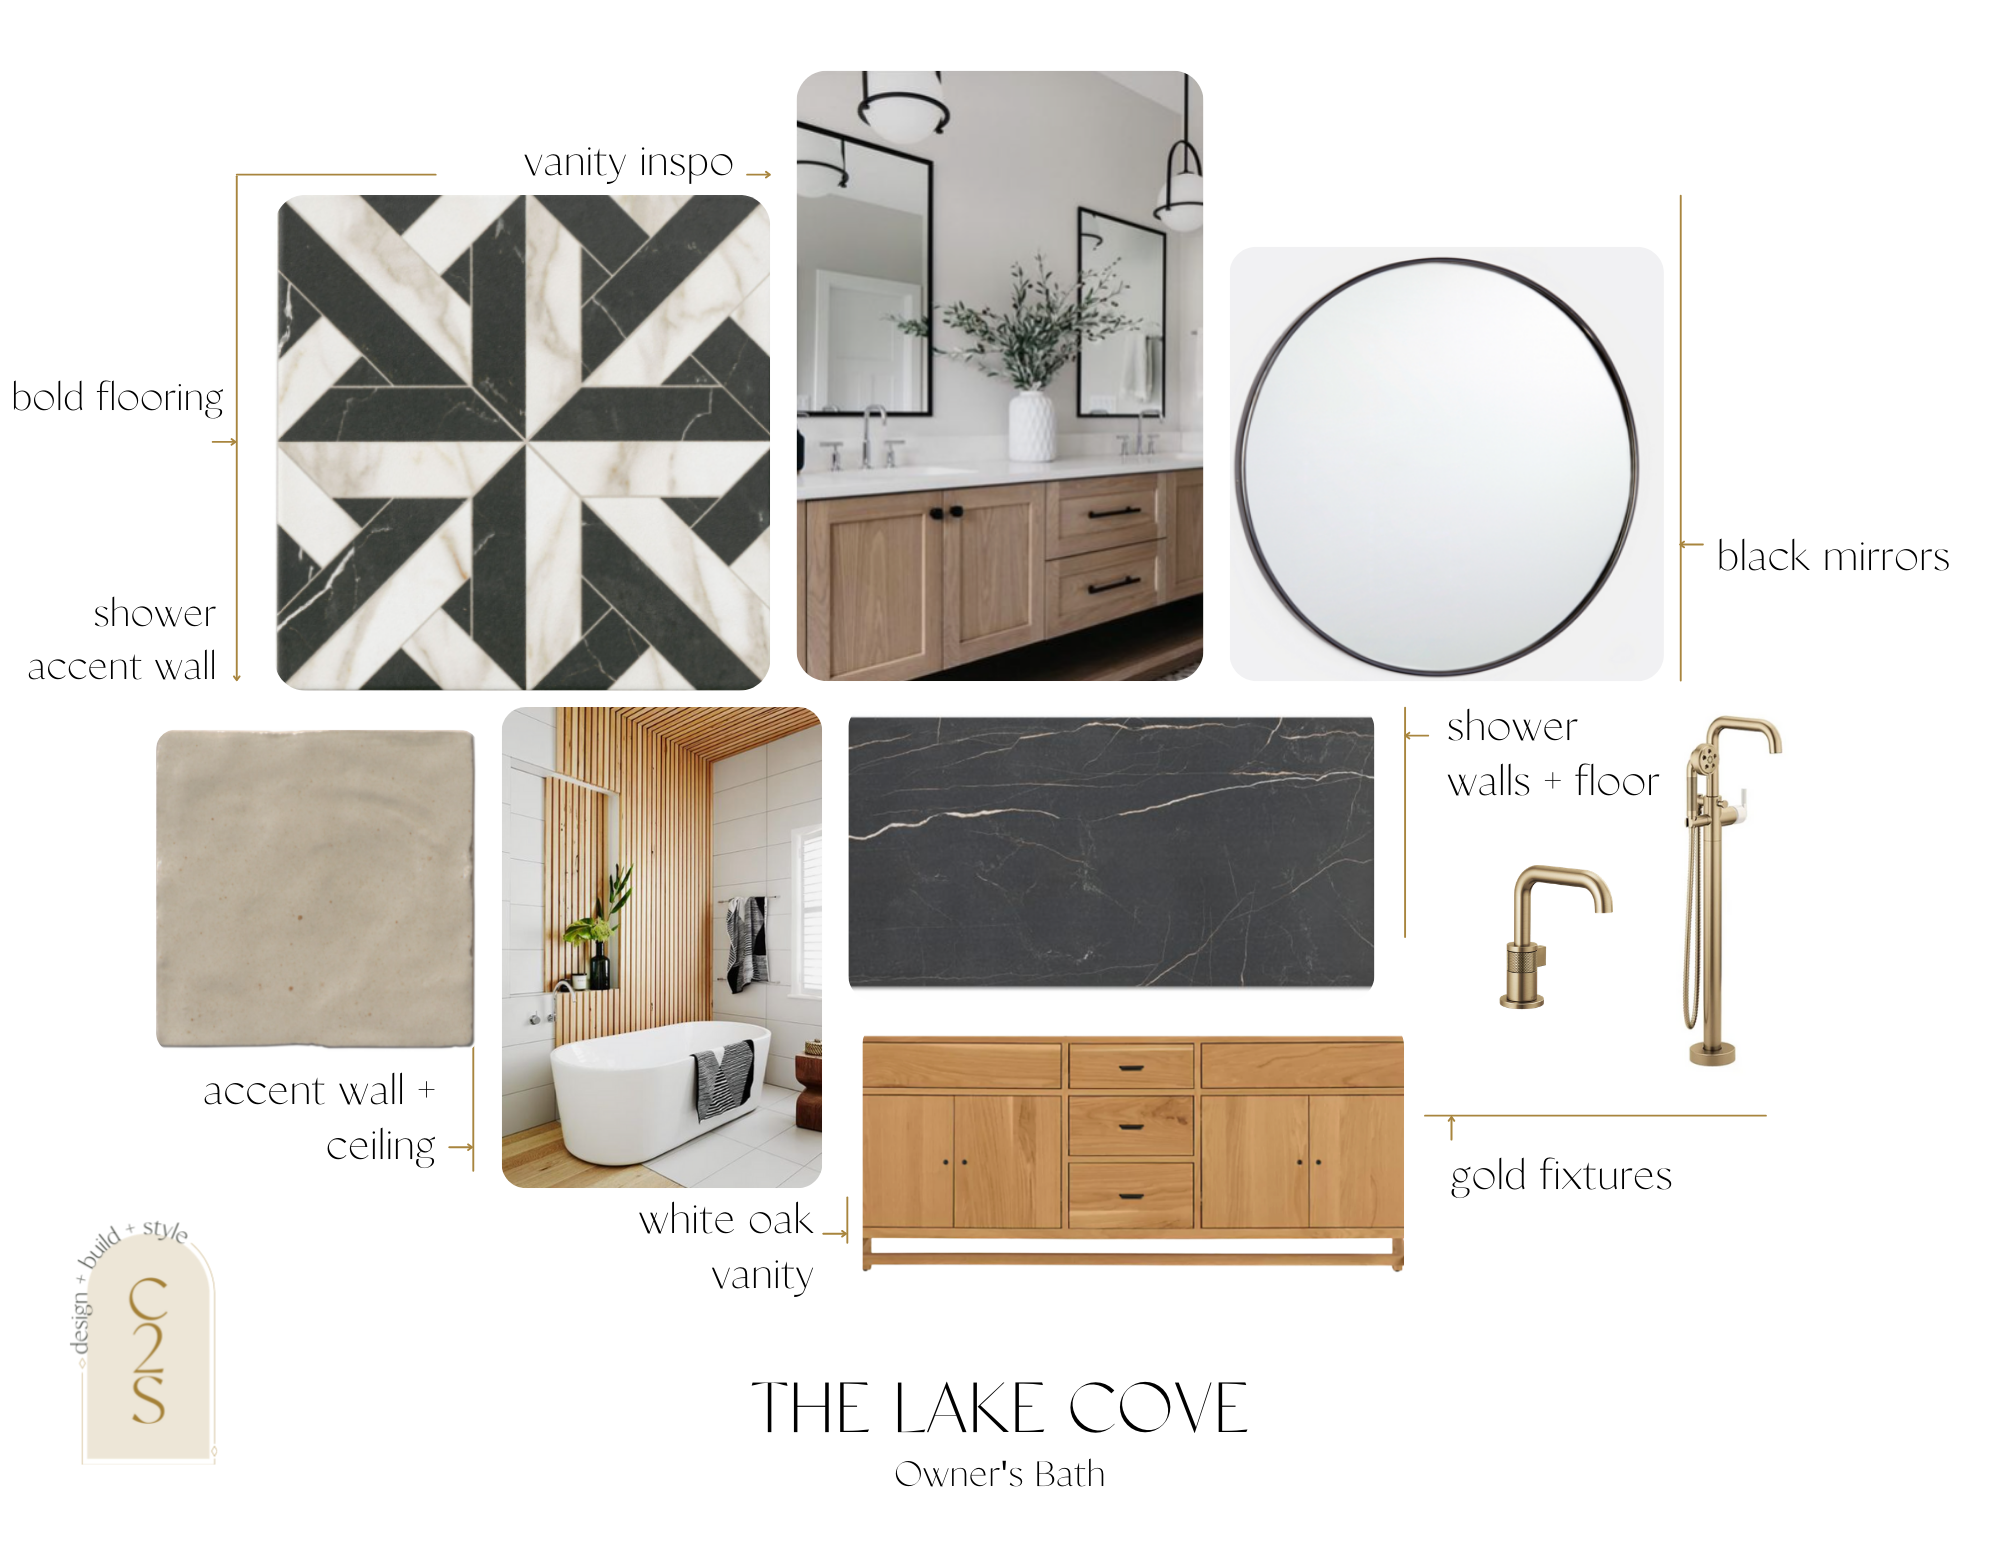 The Lake Cove Design 17